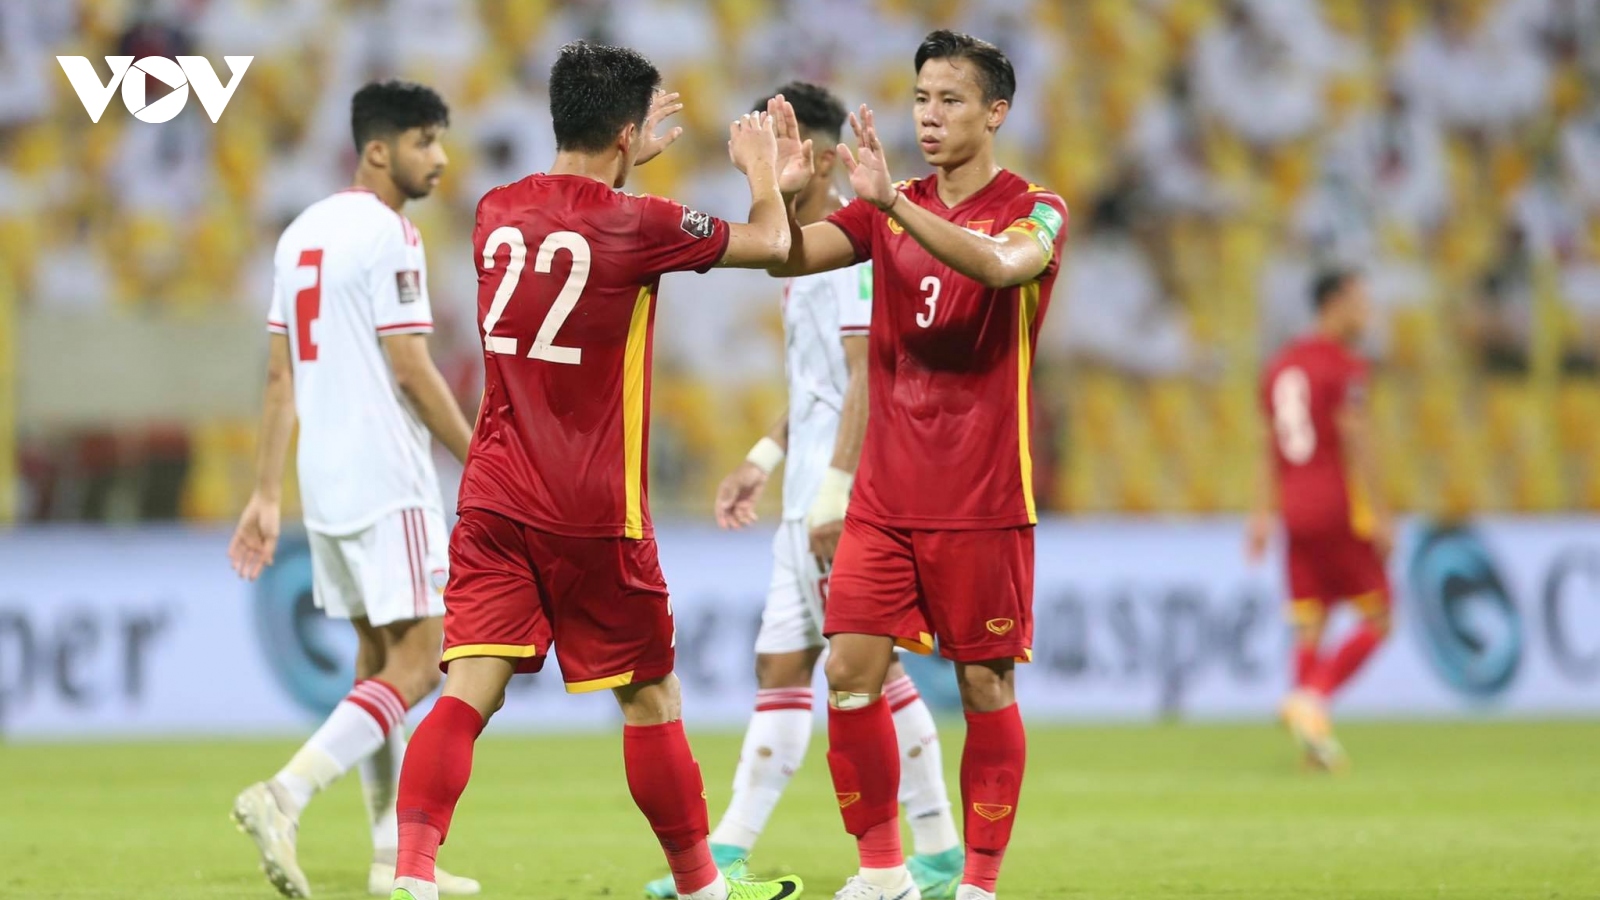 Thua 2-3 trước UAE, ĐT Việt Nam vẫn làm nên lịch sử khi tiến vào vòng loại thứ 3 World Cup